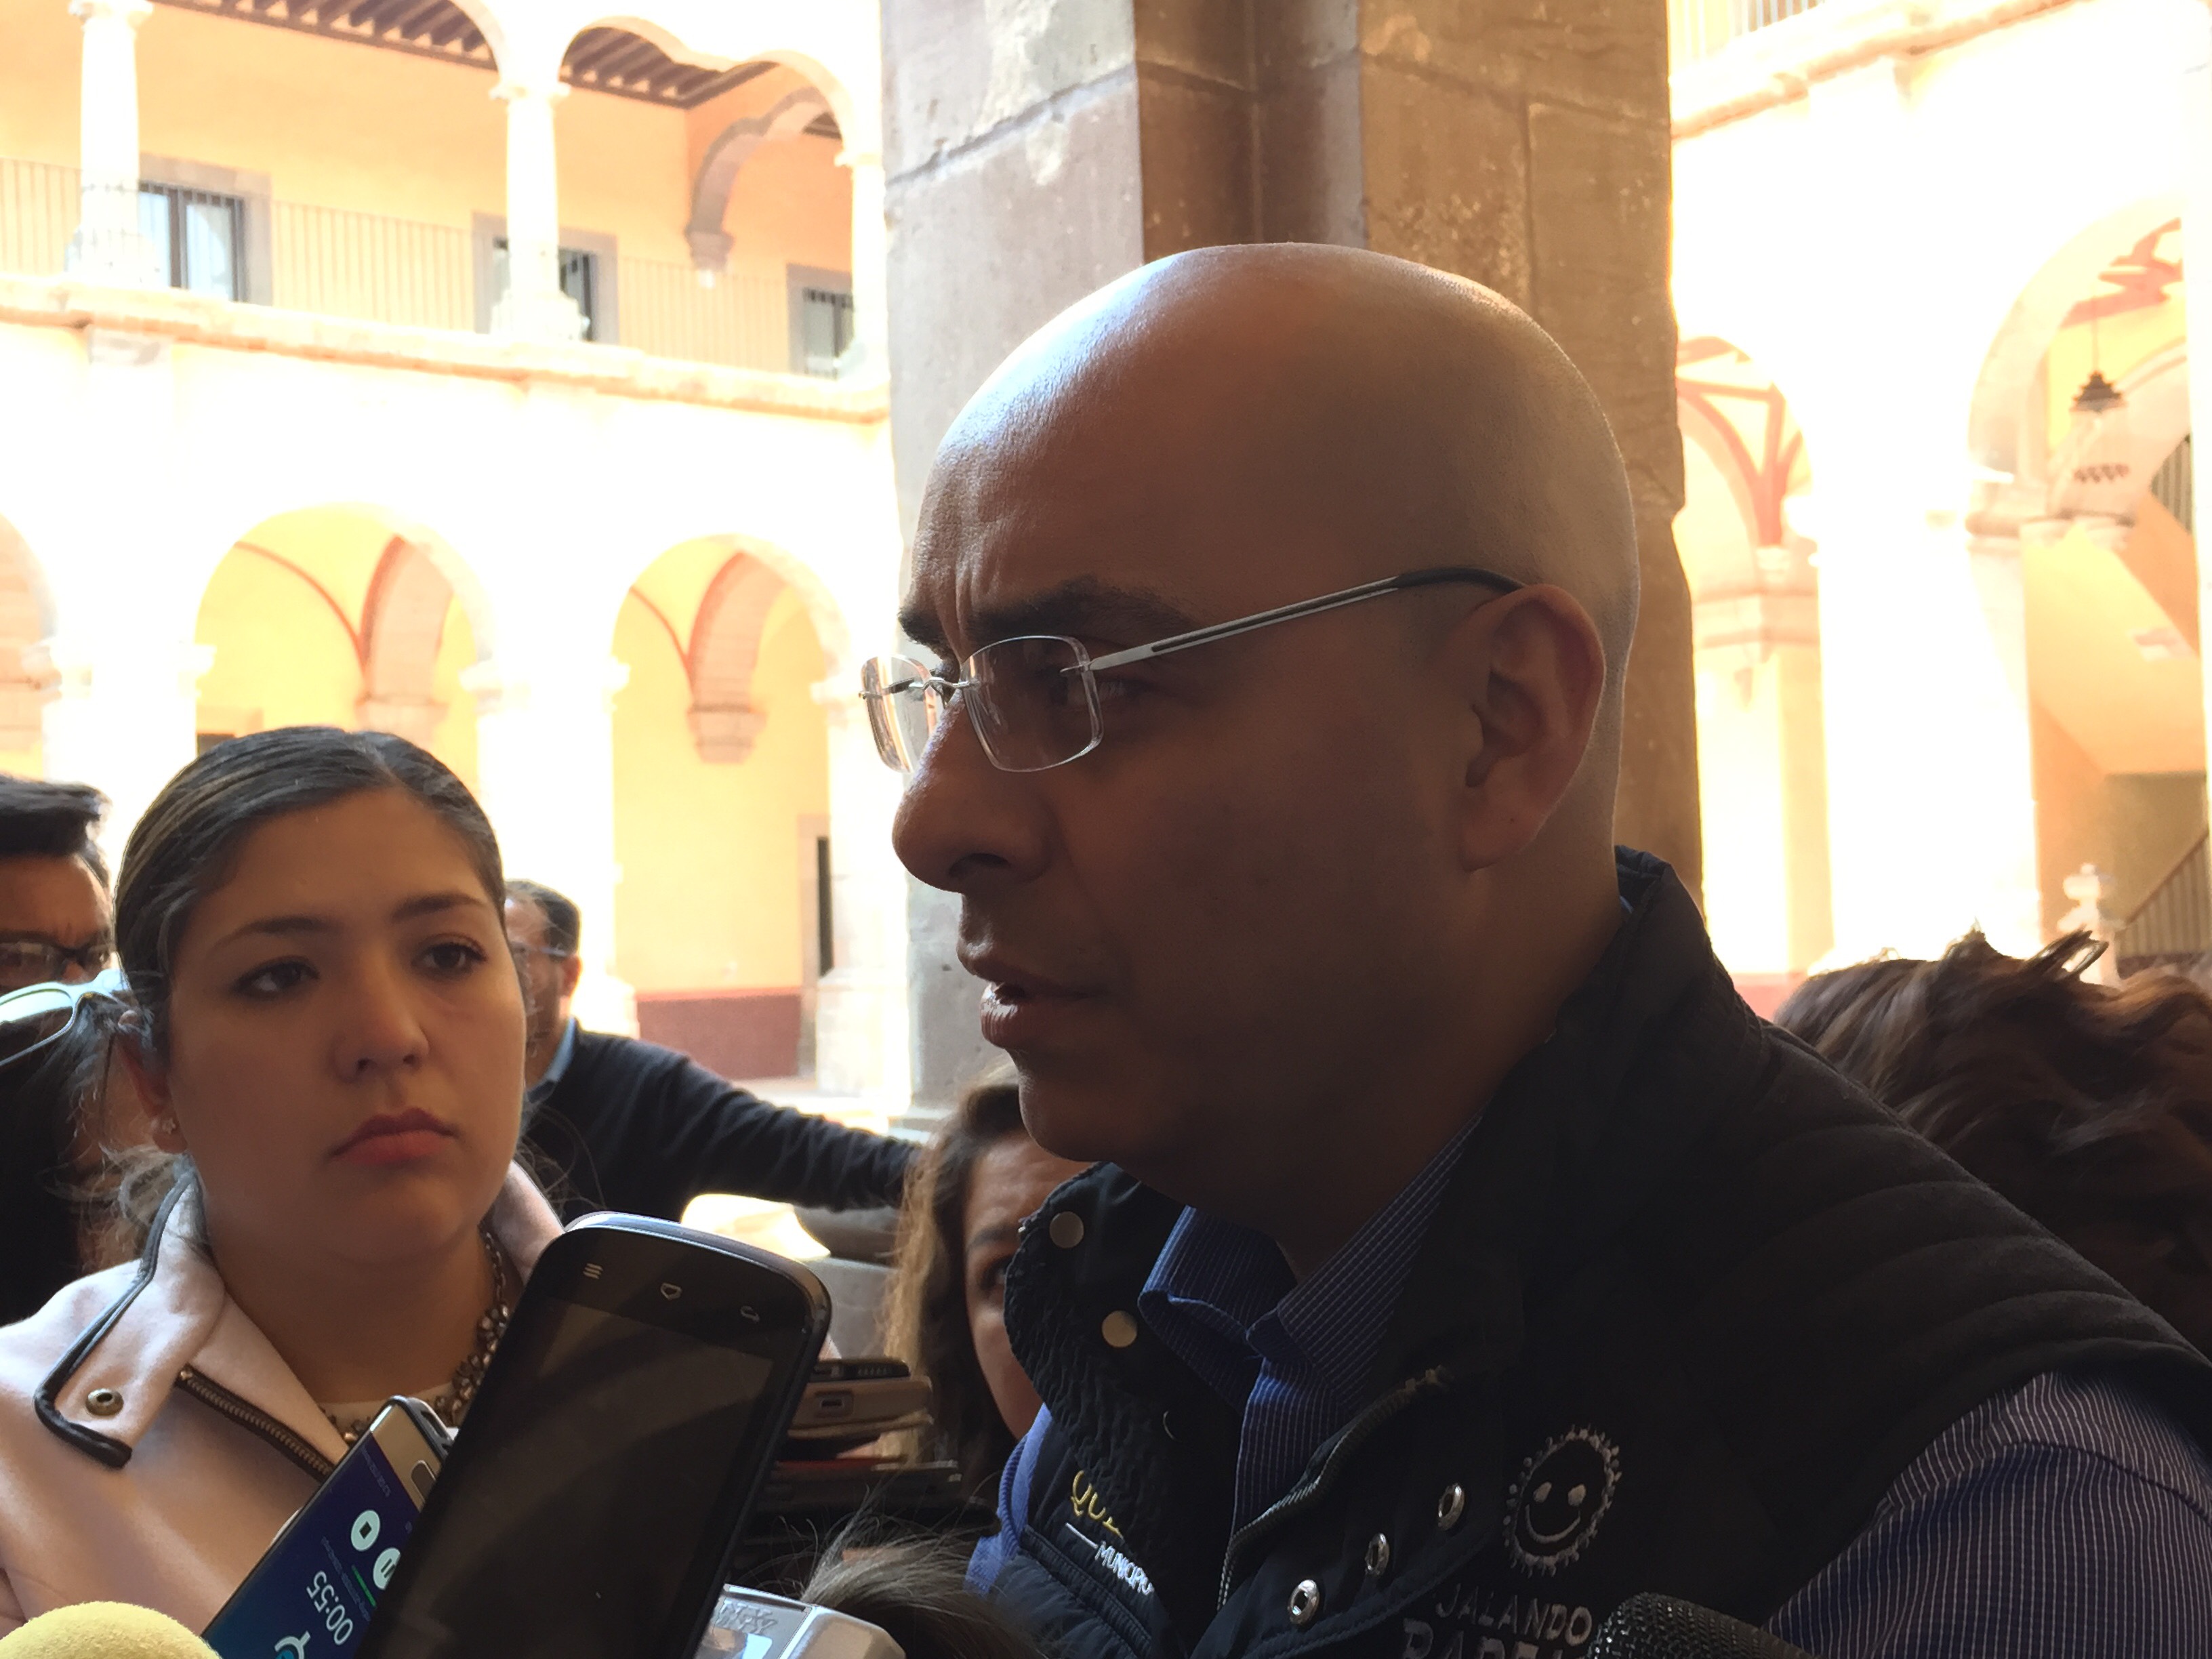  Casetas de vigilancia no impedirán el libre tránsito, afirma Marcos Aguilar